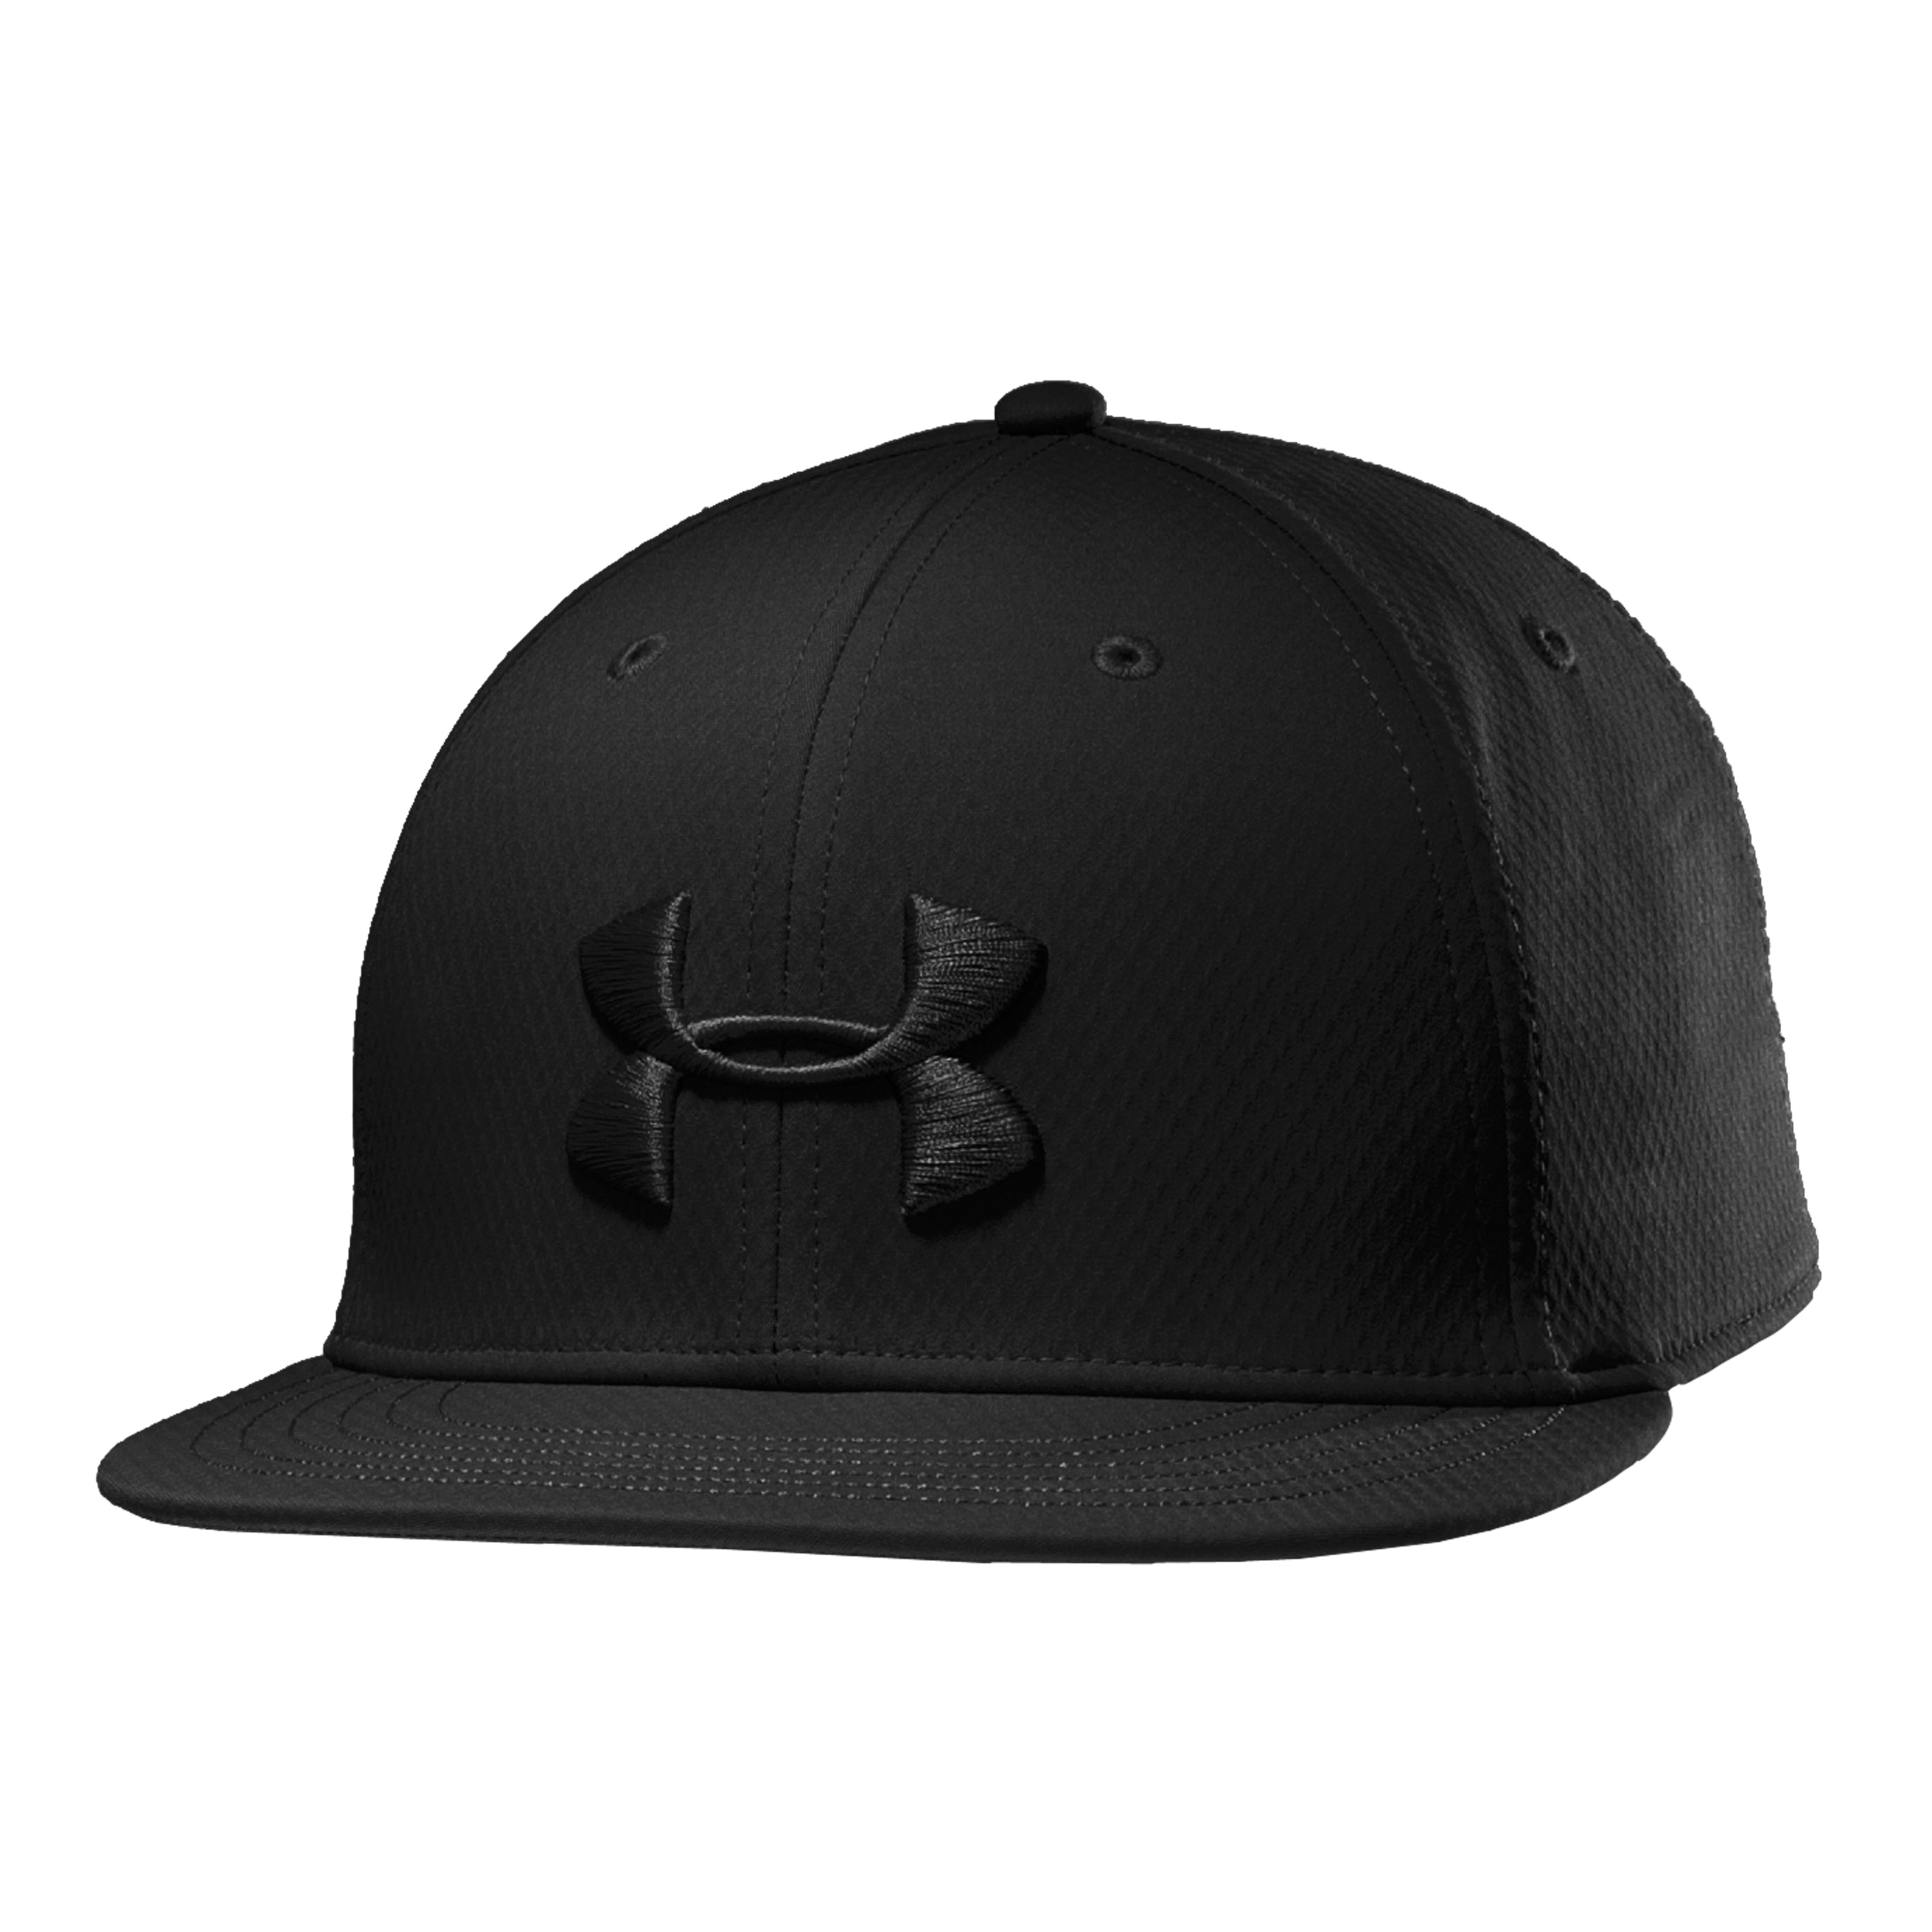 Under Armour Cap Elevate Street black, Under Armour Cap Elevate Street  black, Baseball Caps, Hats, Head Gear